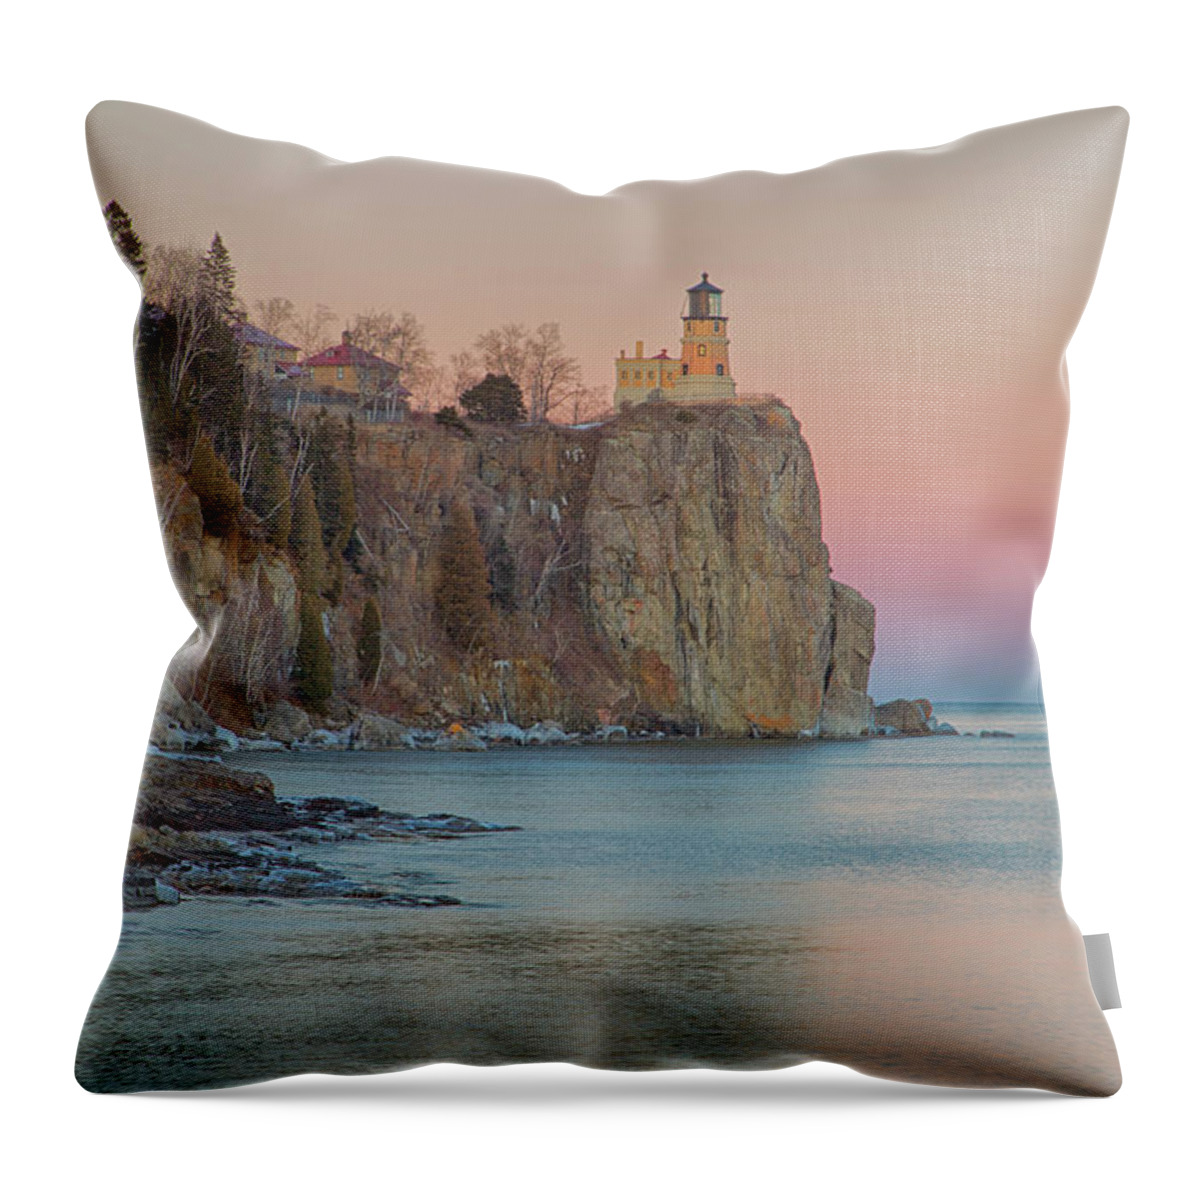 Minnesota Throw Pillow featuring the photograph Split Rock Lighthouse Golden Hour by Nancy Dunivin